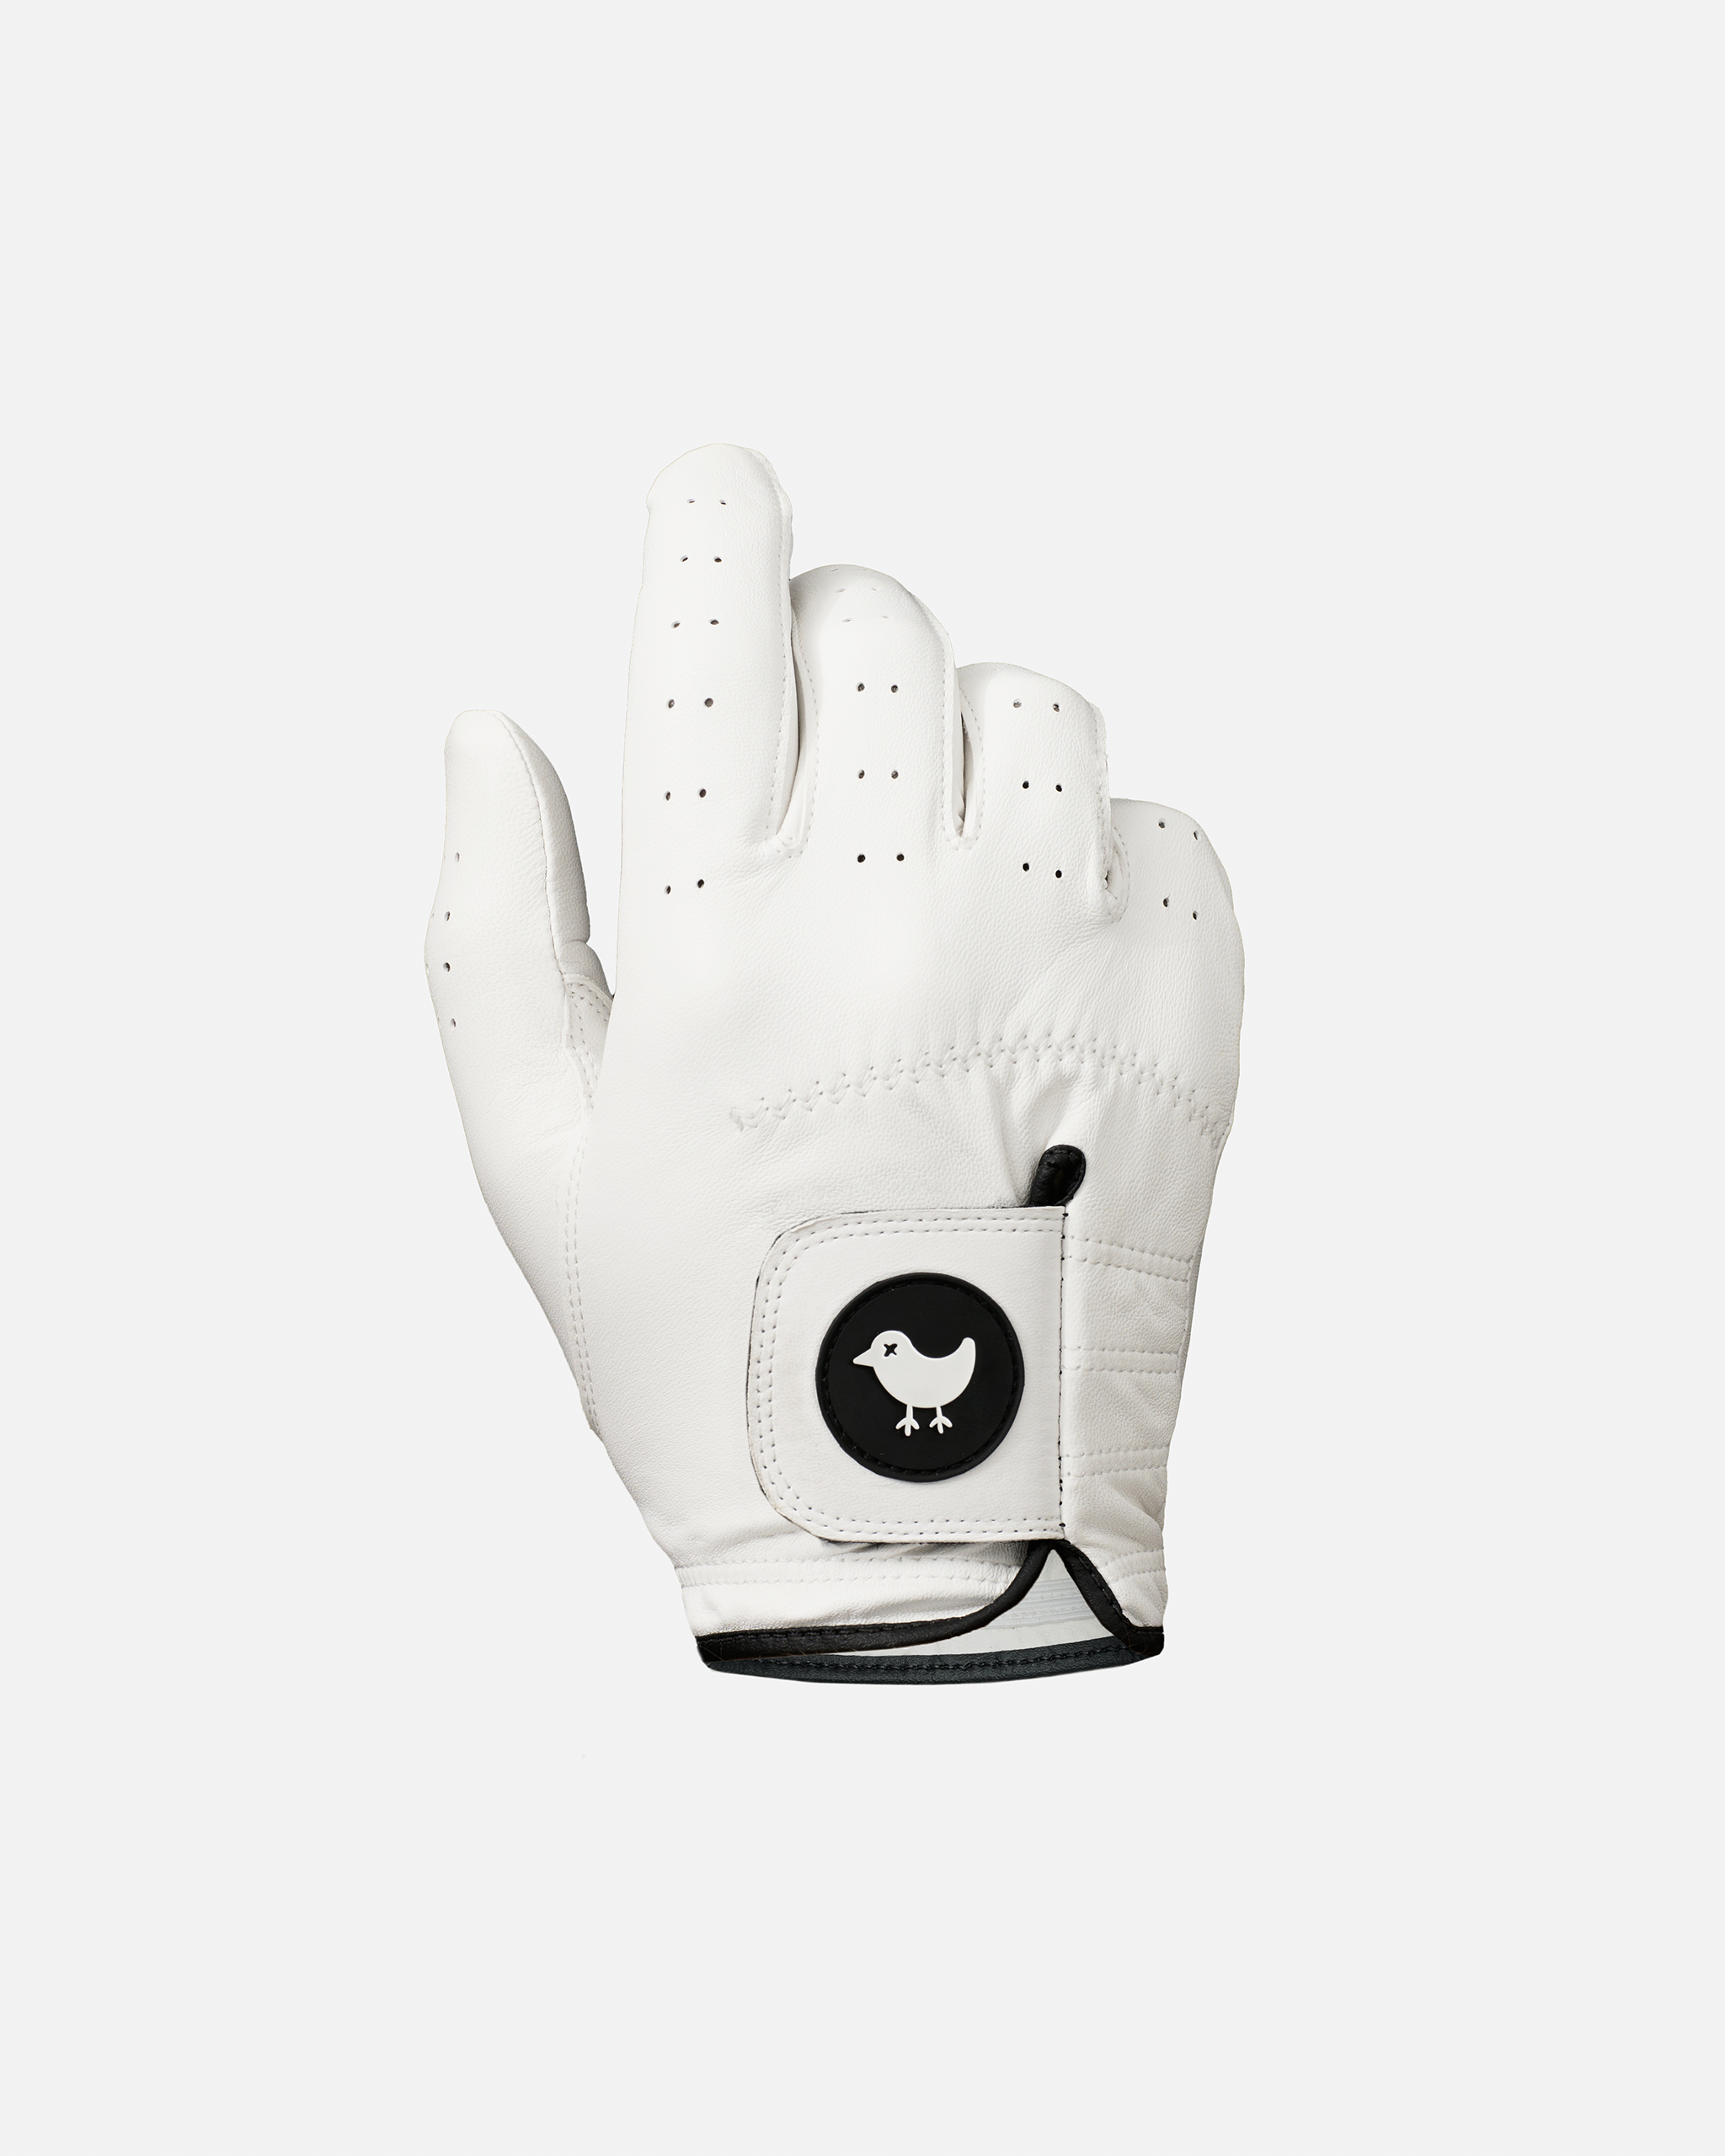 Right Glove - Bad Birdie